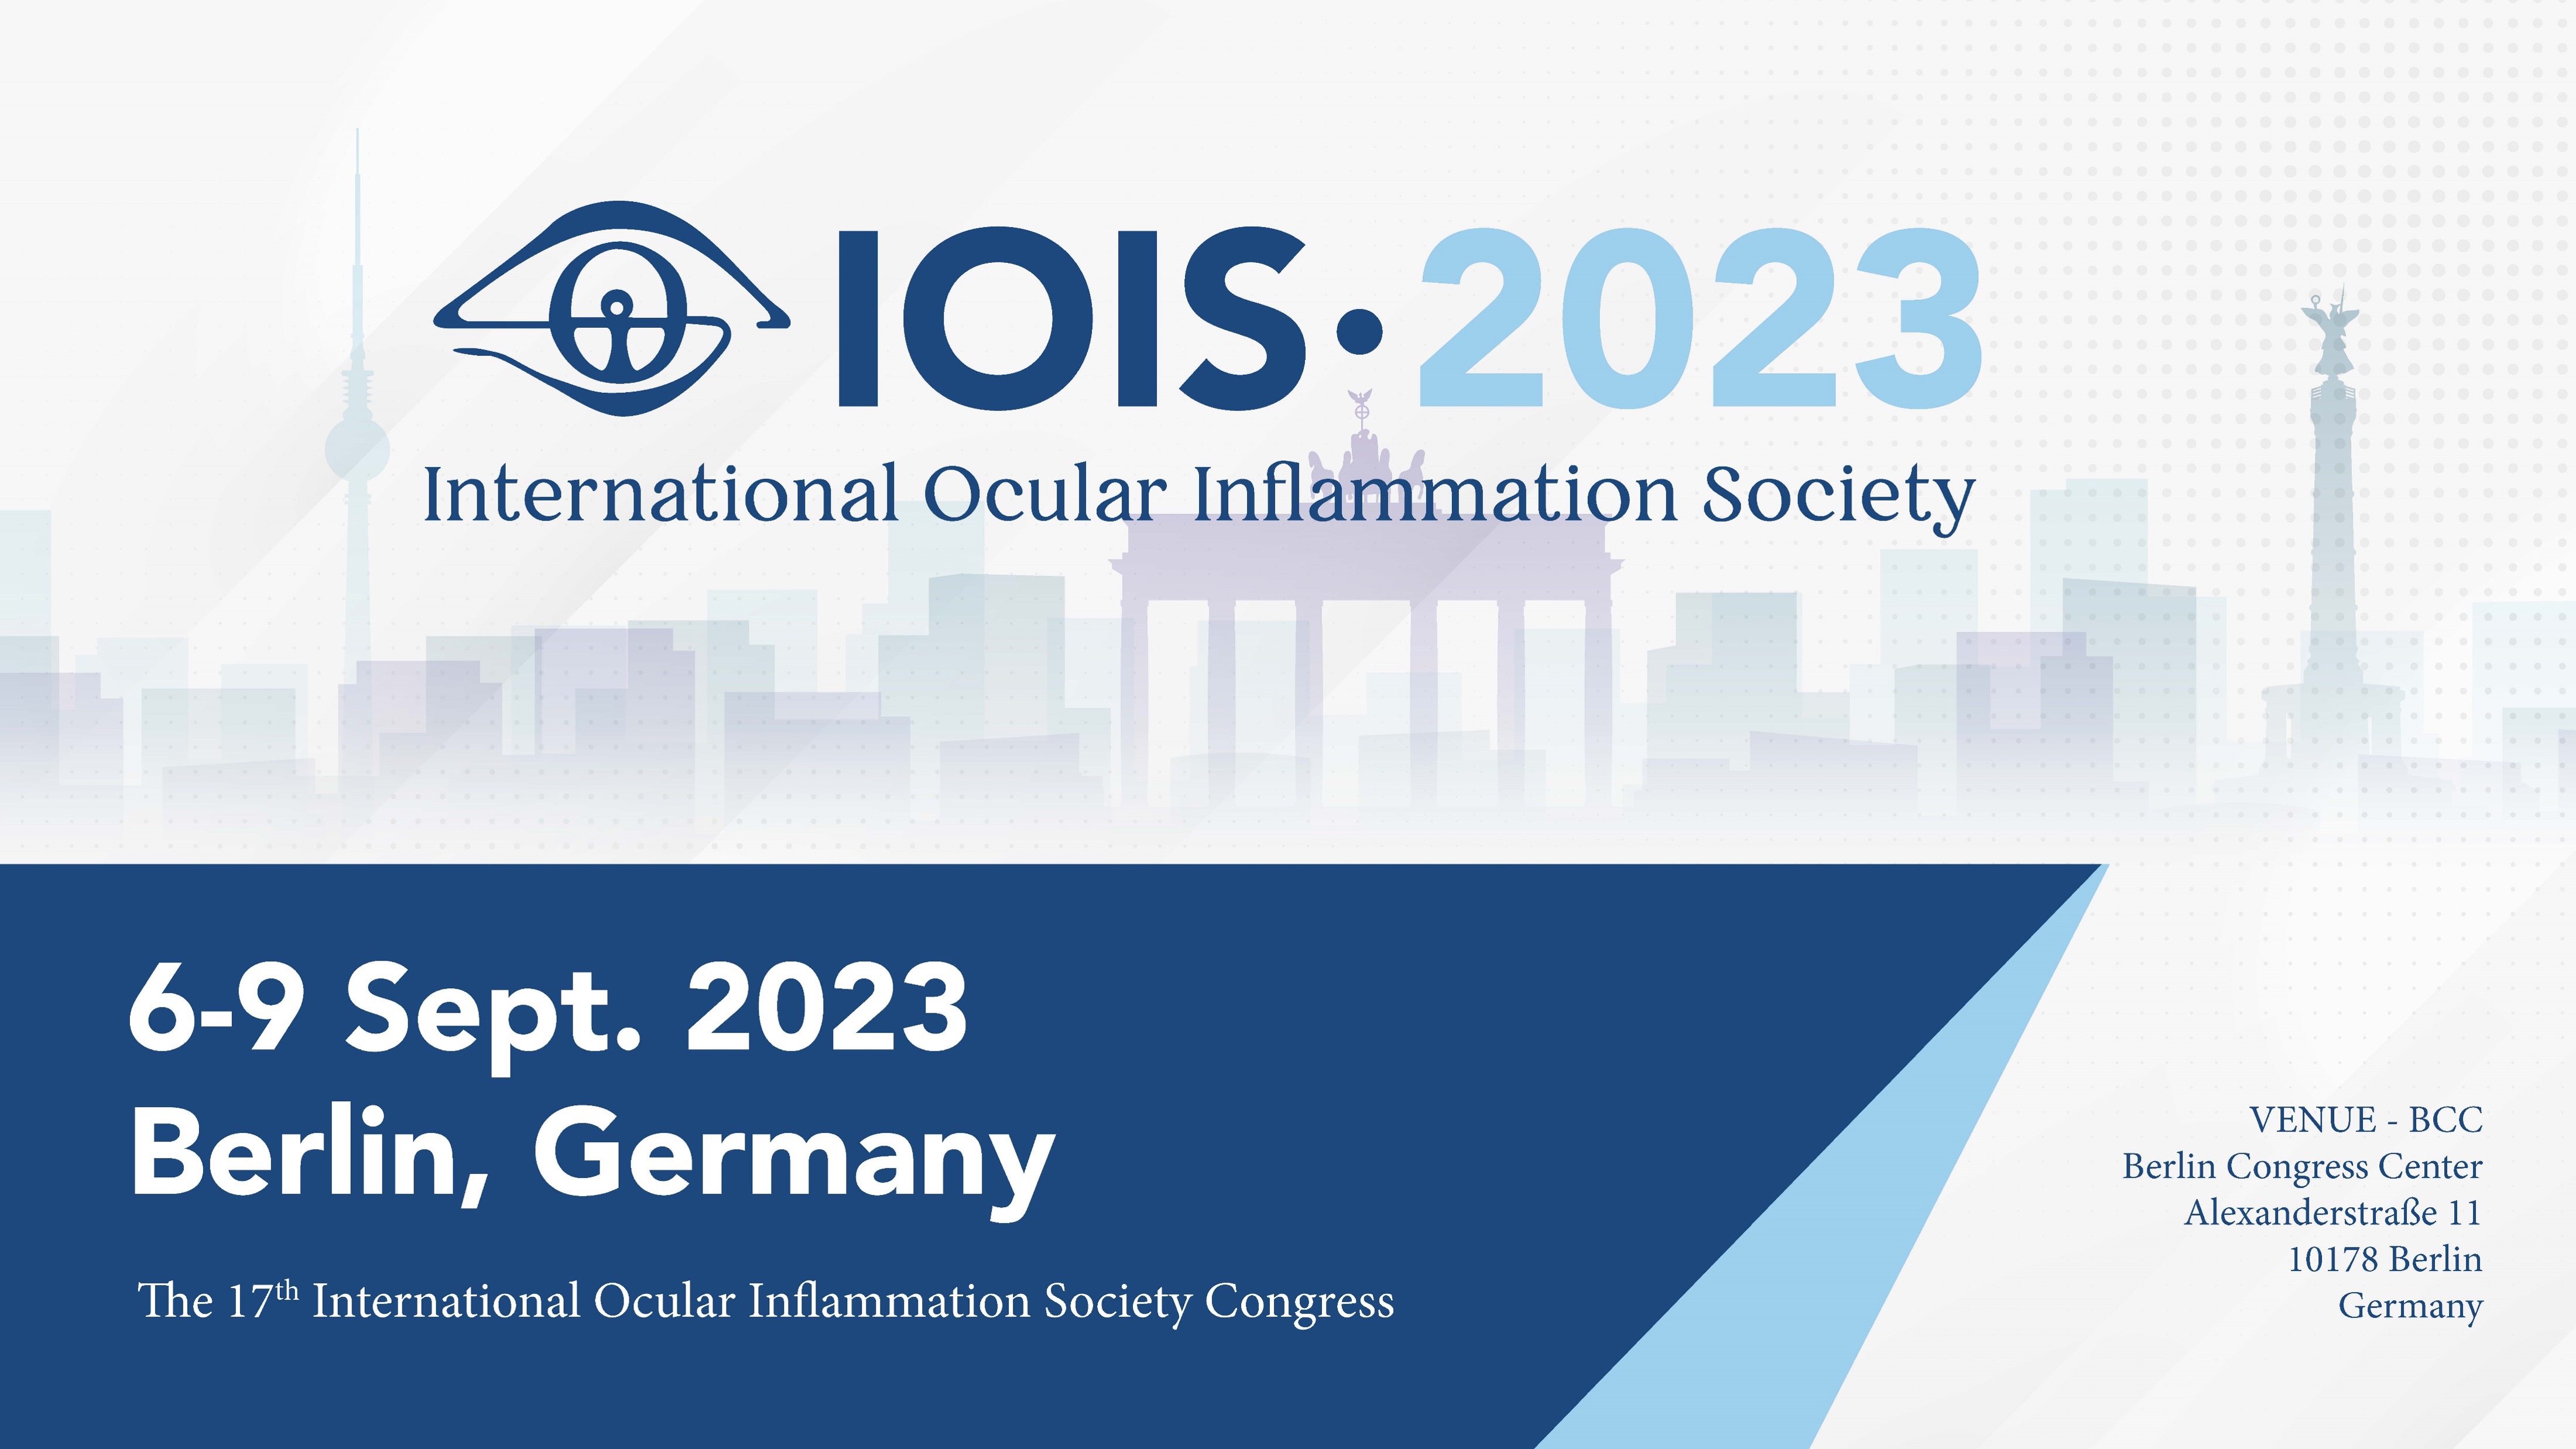 Meet EuDES at the IOIS 2023 Congress